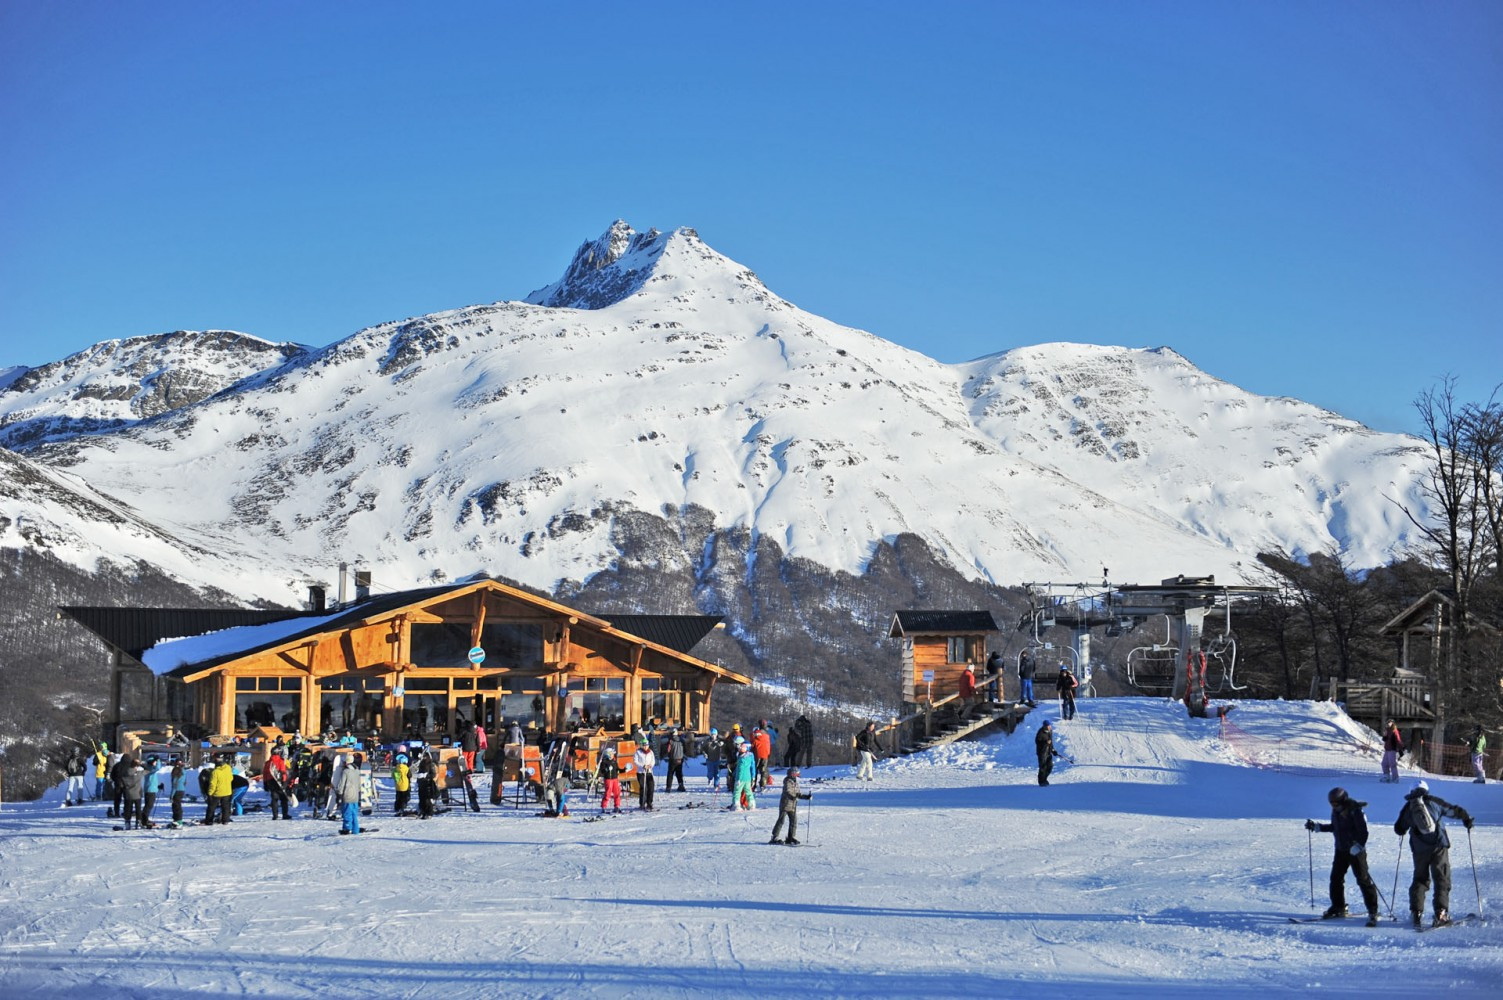 Ubicado en la ladera del Cerro Krund, a 26 kilómetros de la ciudad de Ushuaia, Cerro Castor es el centro de esquí alpino más austral del mundo y el más grande de Tierra del Fuego. Fotos: Cerro Castor.
